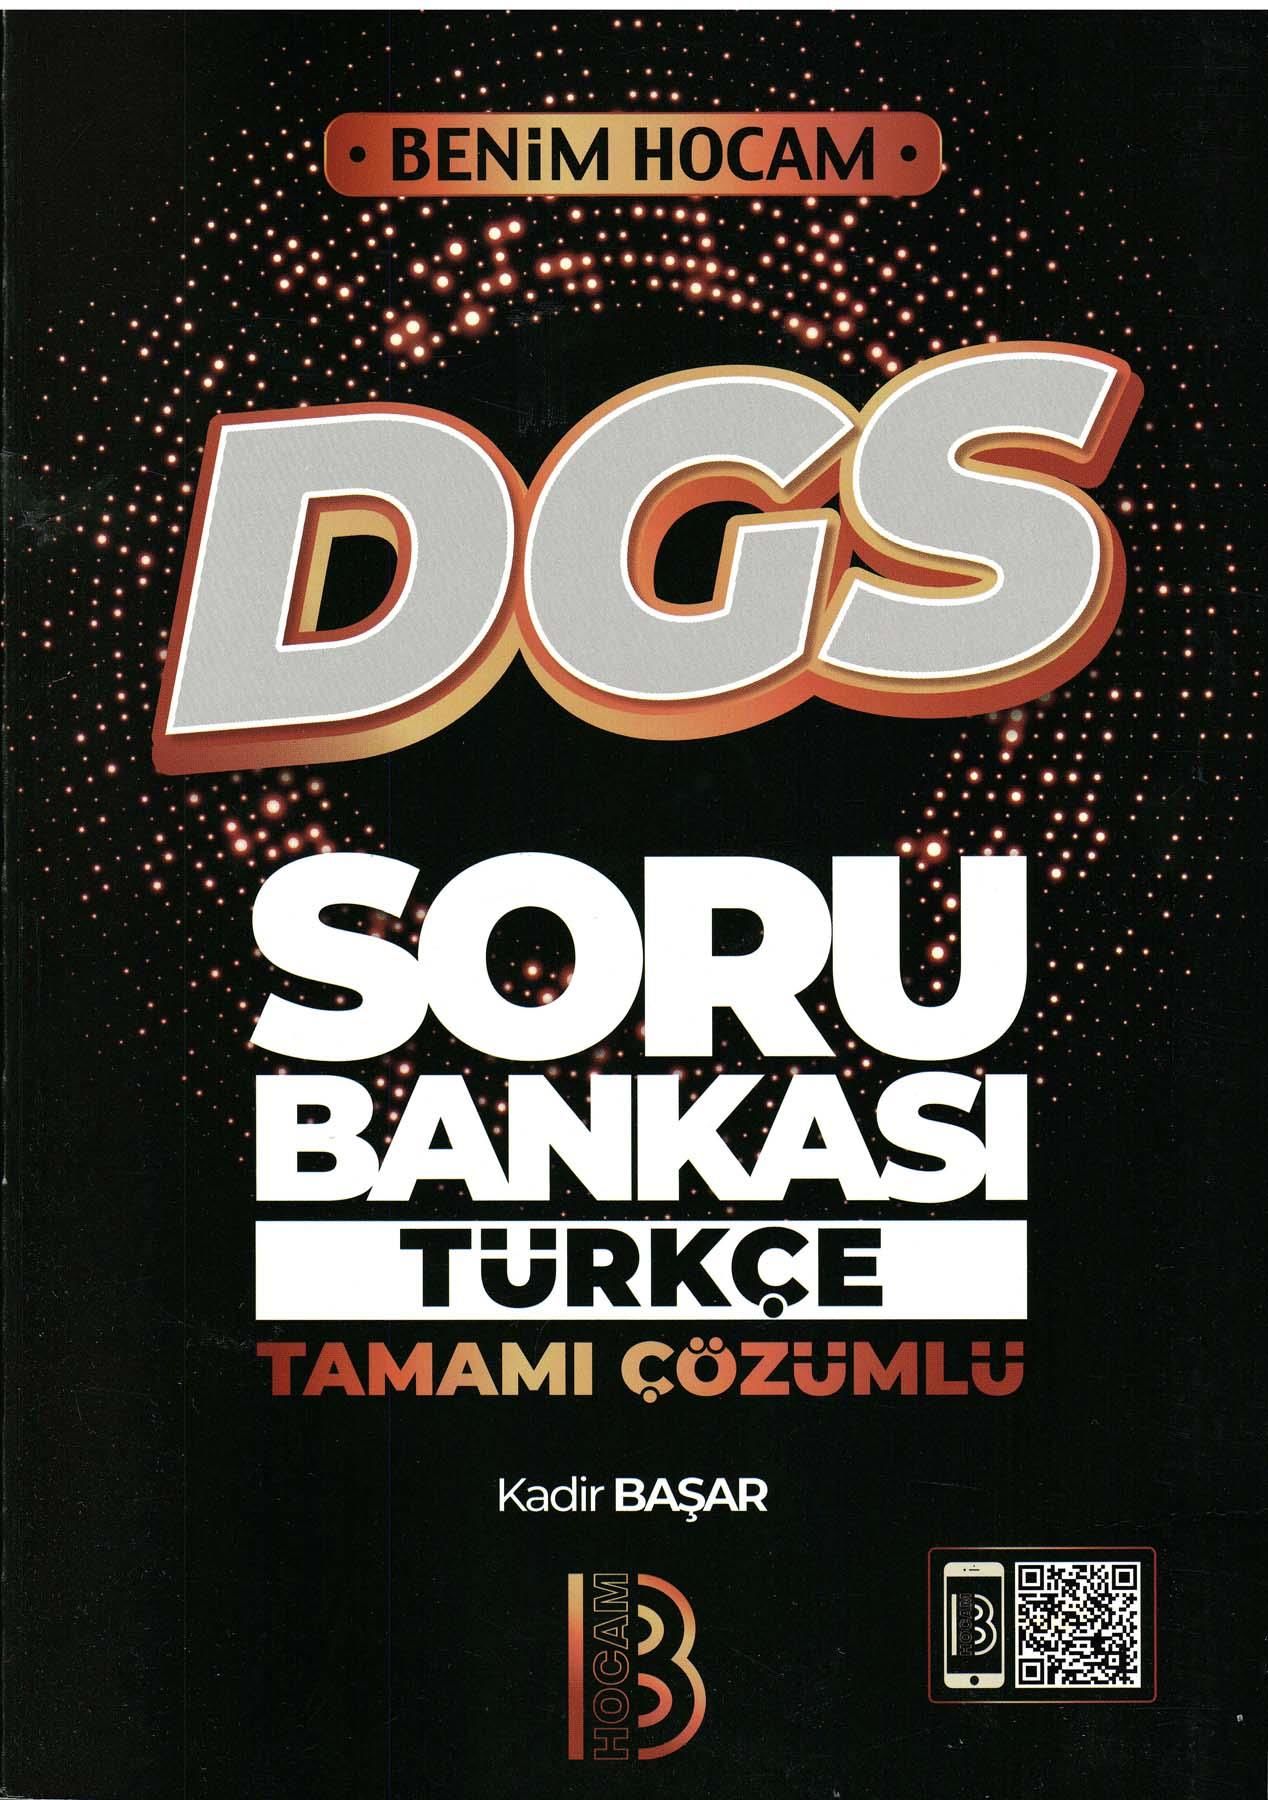 Benim Hocan Dgs Türkçe Tamamı Çözümlü Soru Bankası